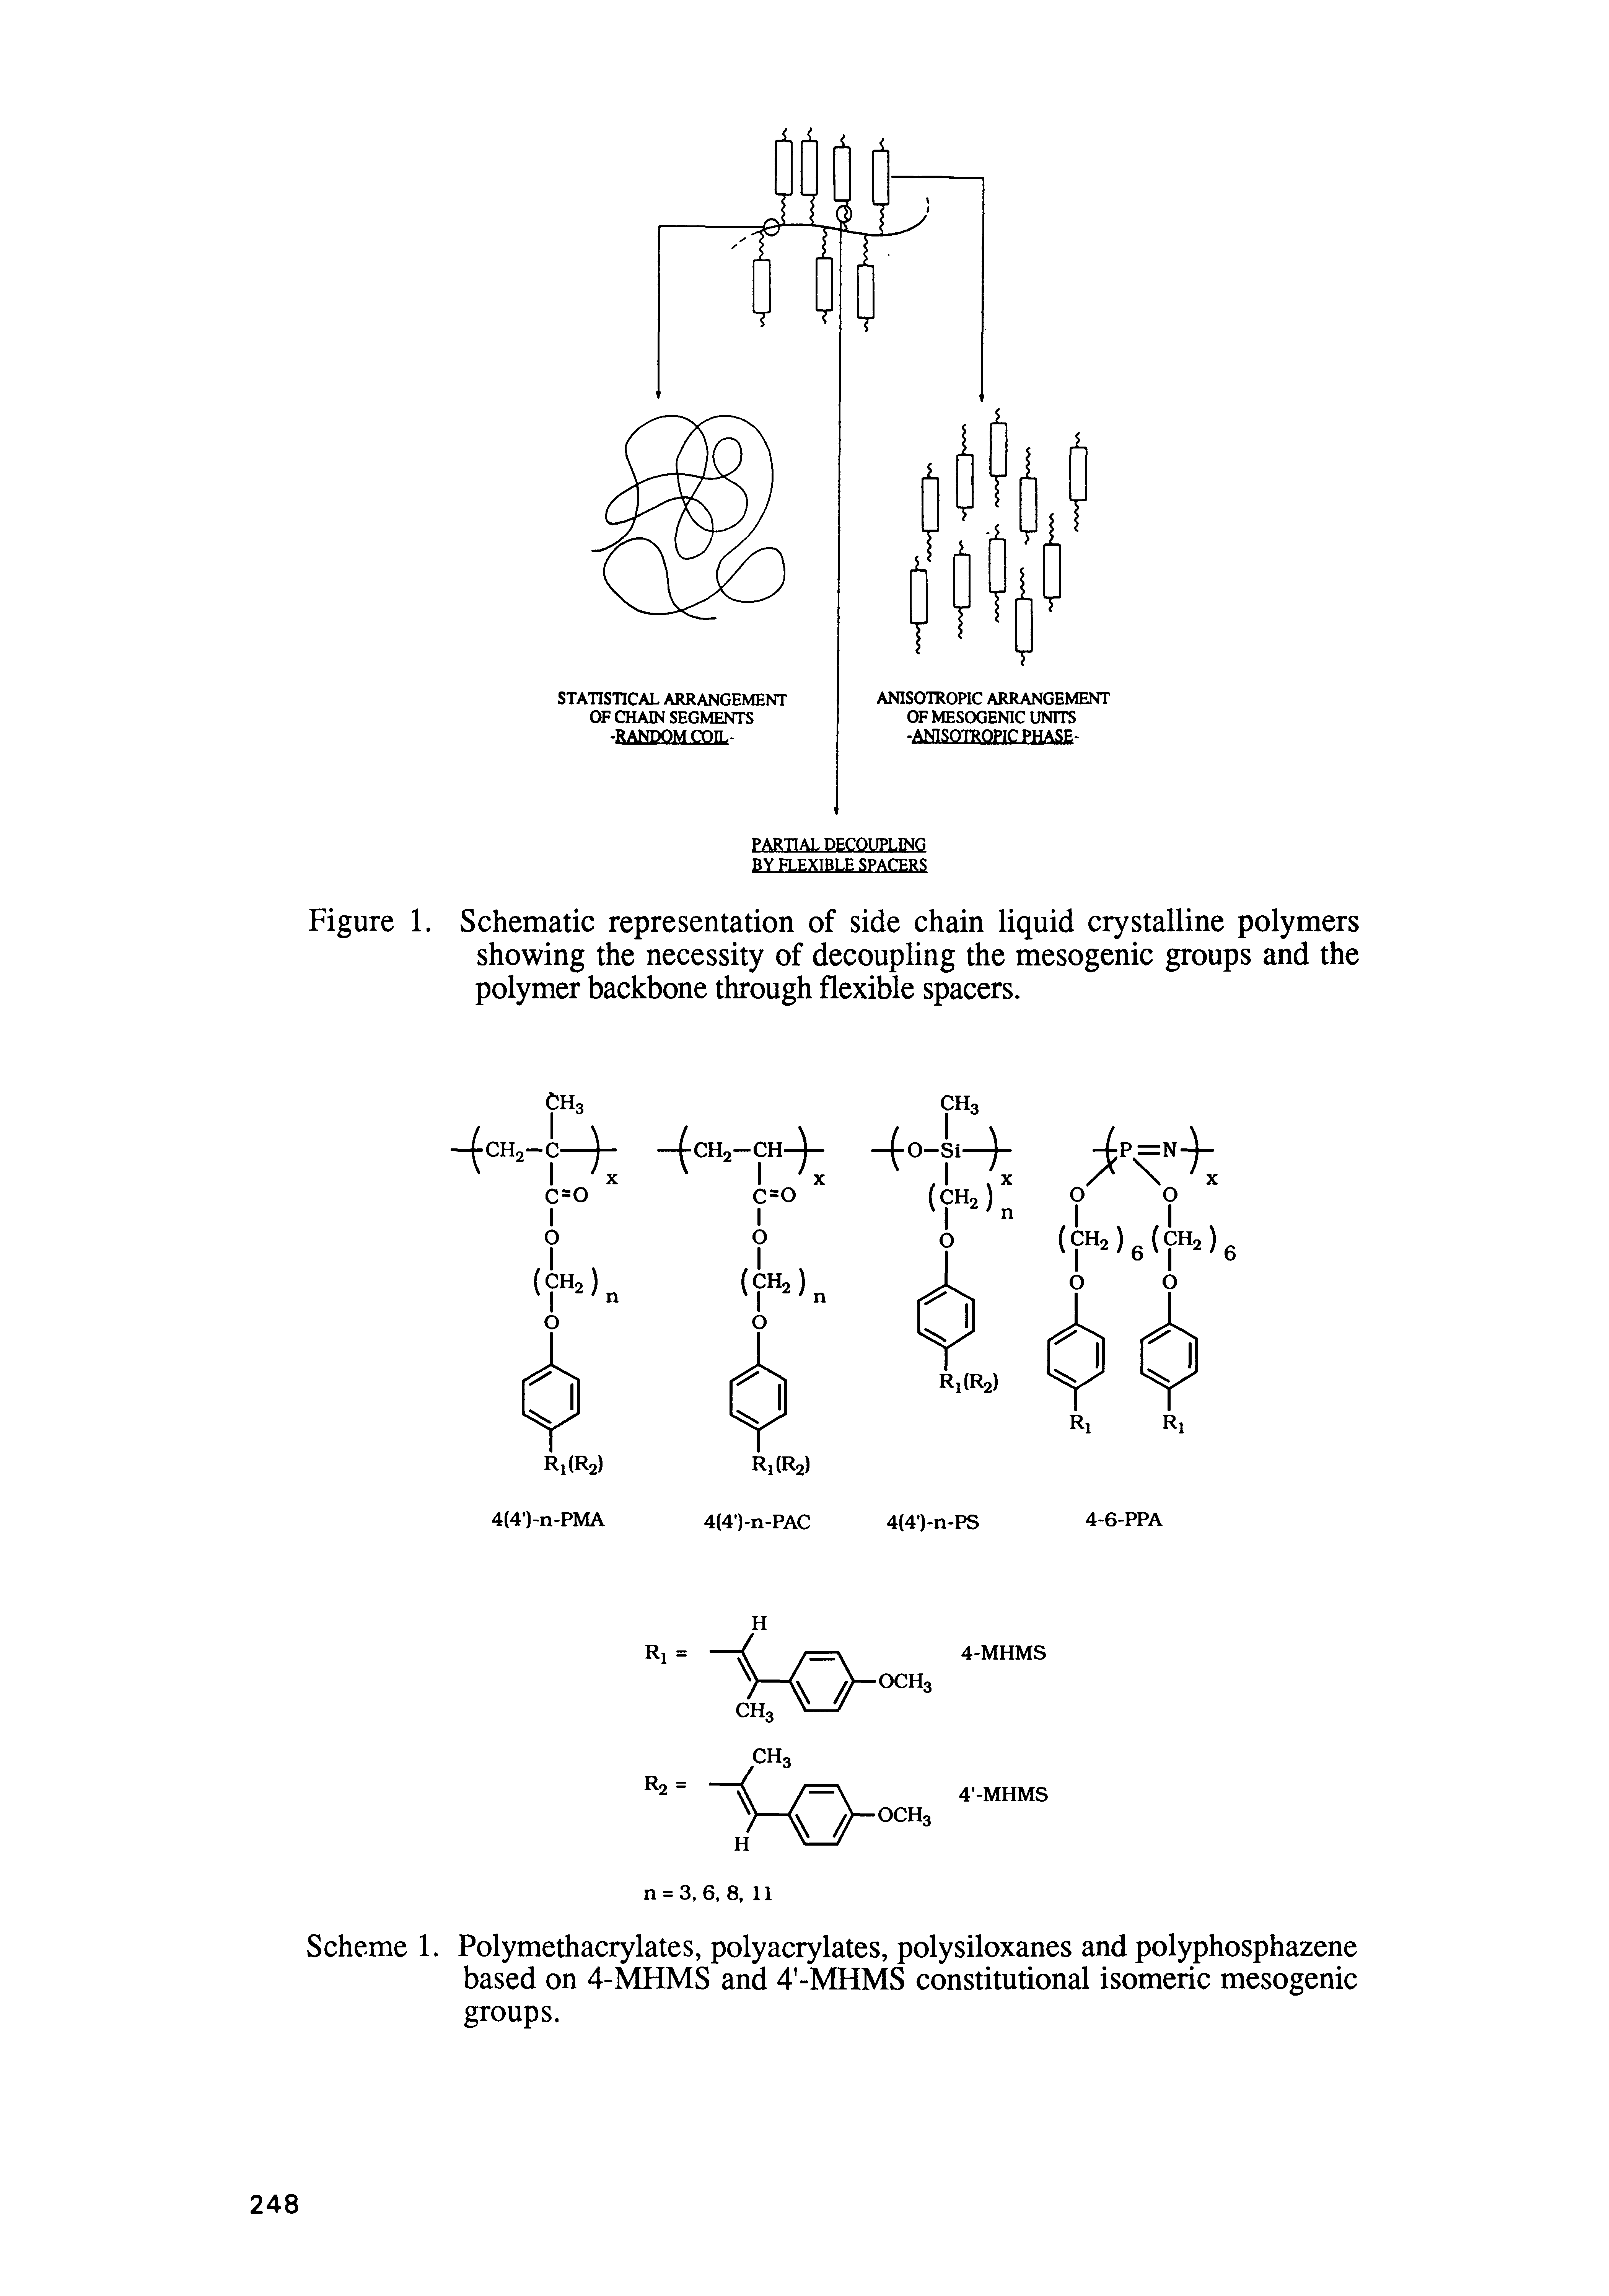 Scheme 1. Polymethacrylates, polyacrylates, polysiloxanes and polyphosphazene based on 4-MHMS and 4 -MHMS constitutional isomeric mesogenic groups.